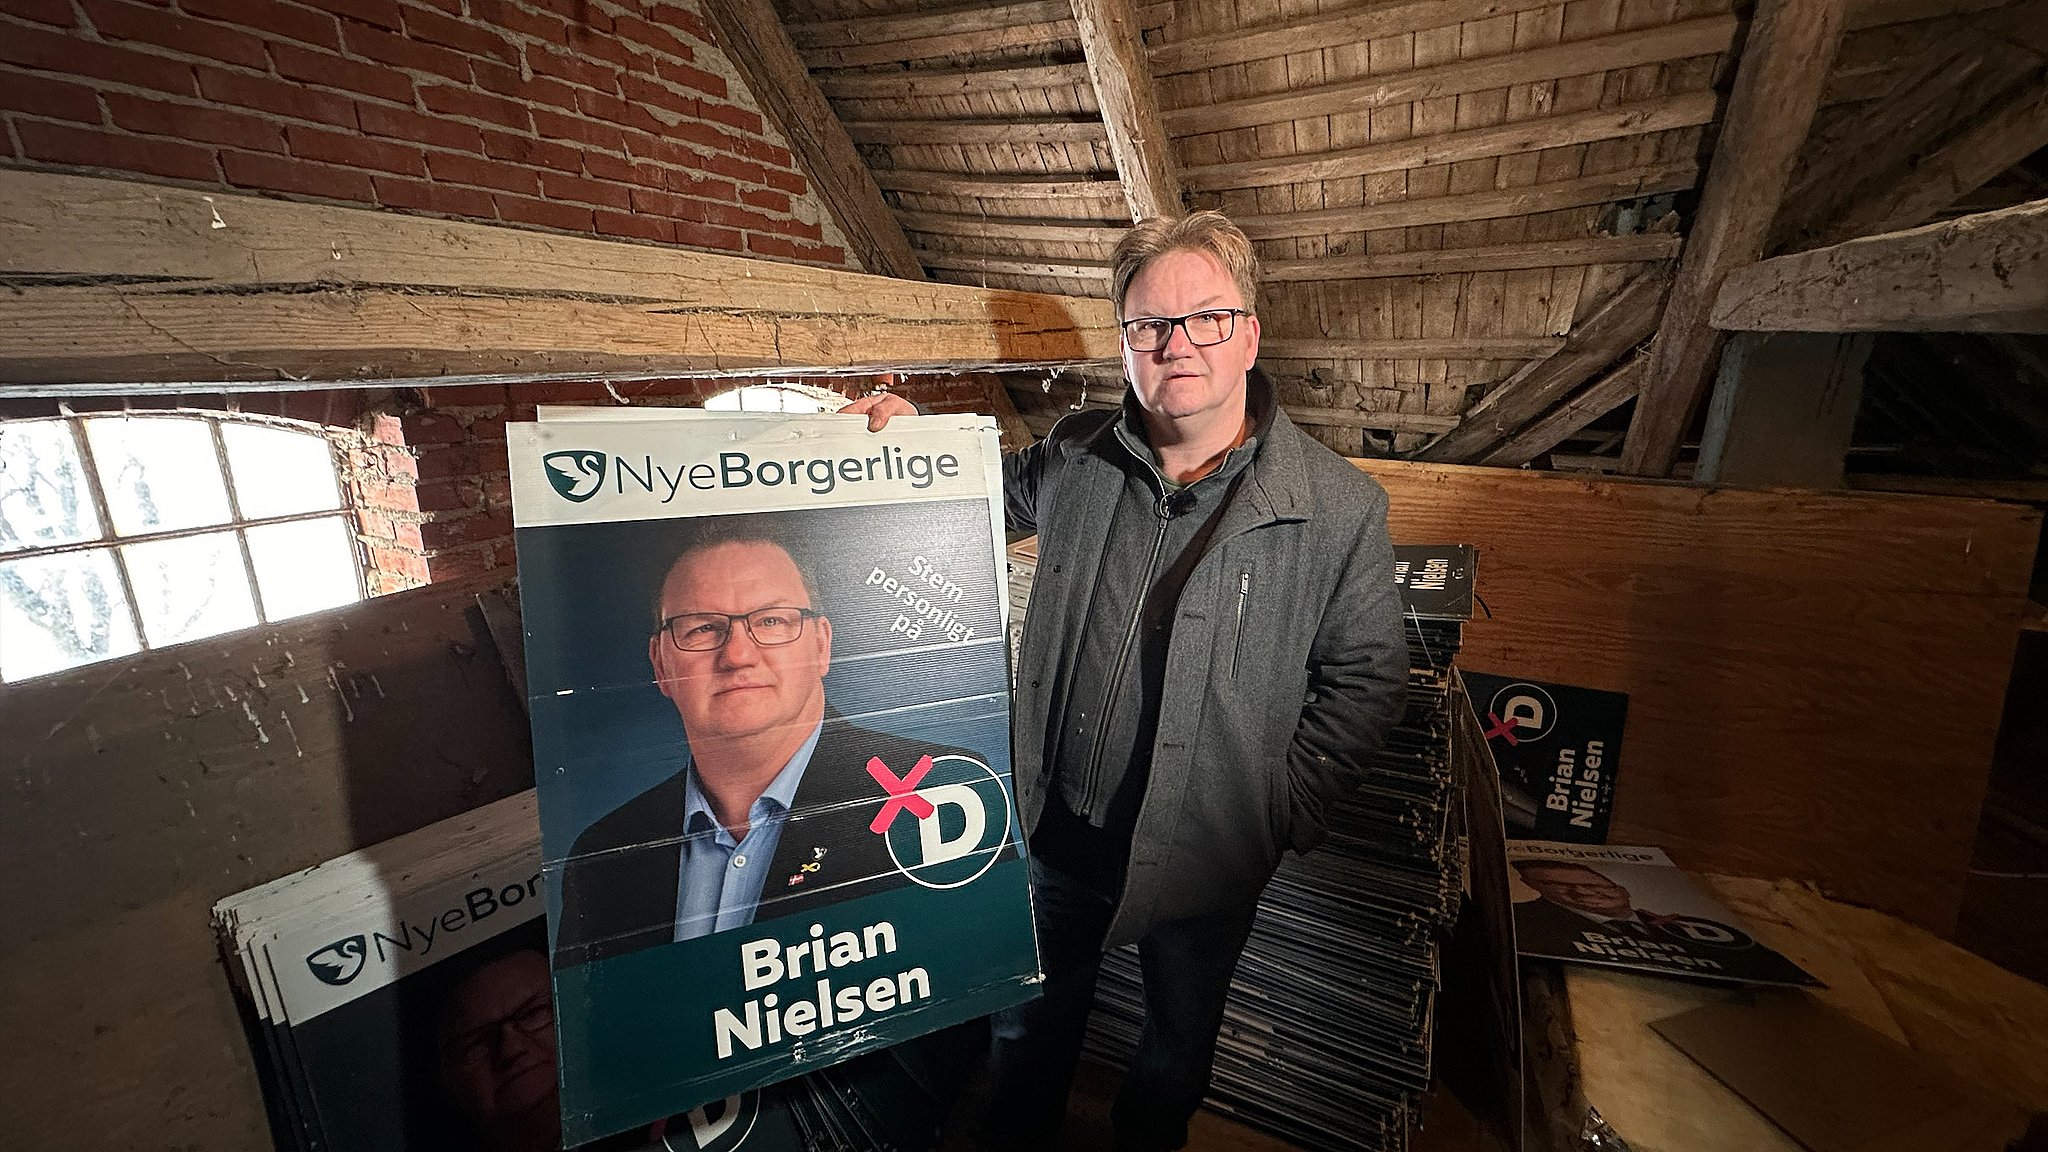 Brian Nielsen, Nye Borgerlige